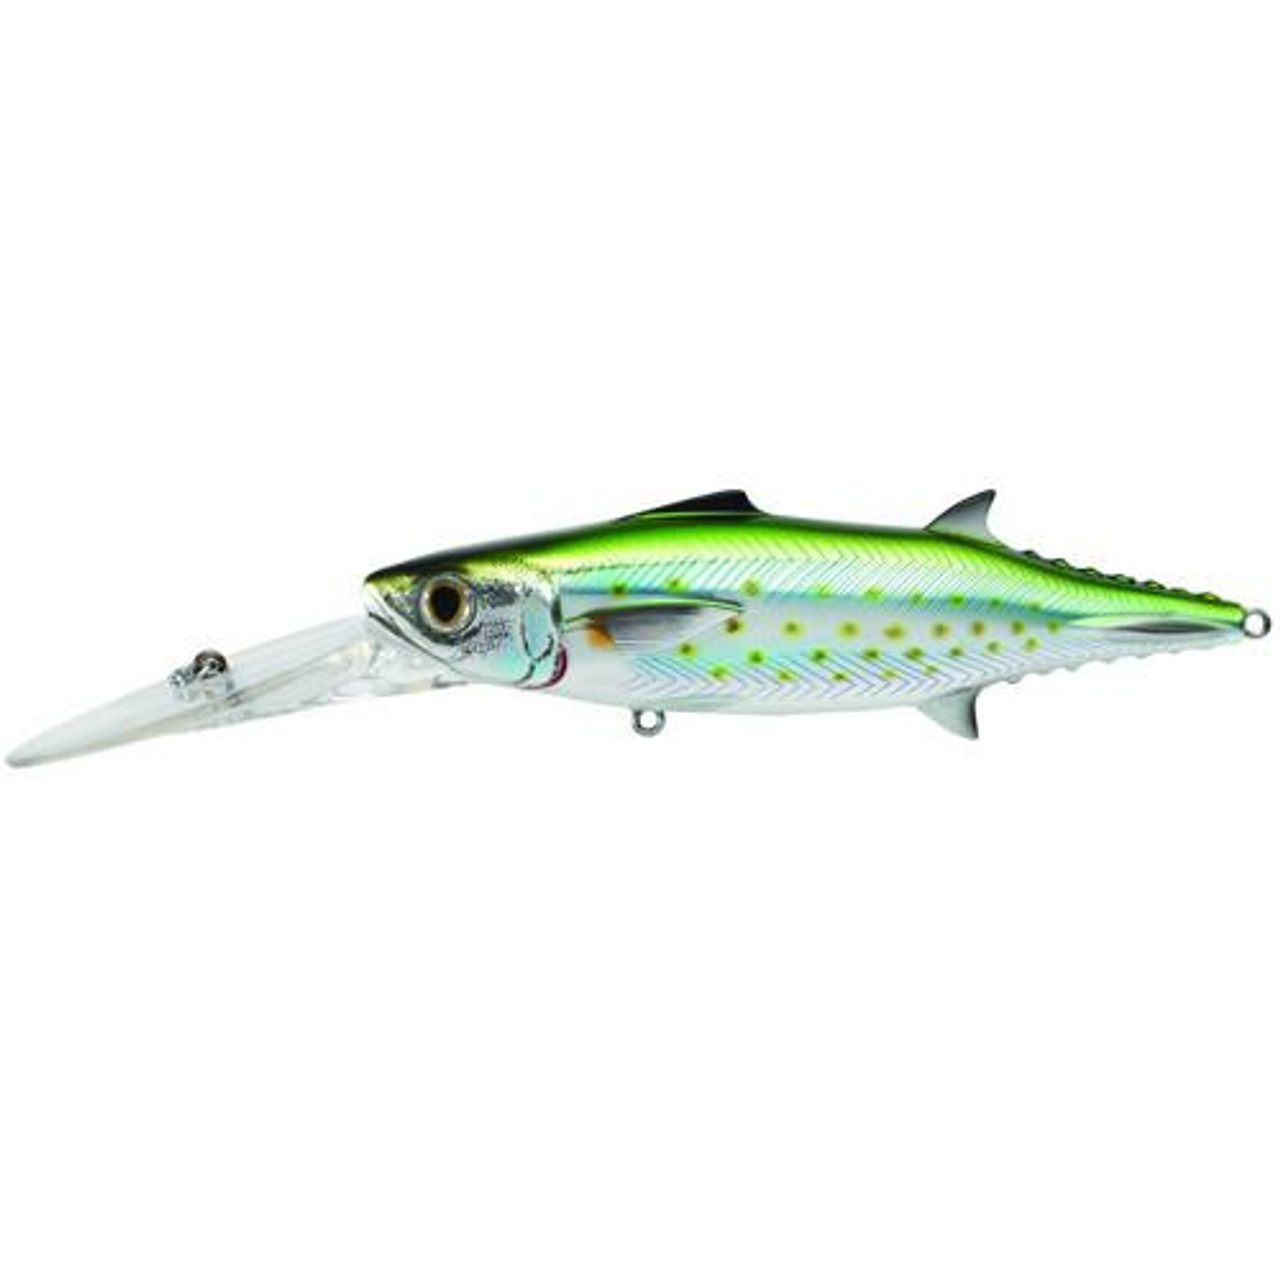 LiveTarget Lures Spanish Mackerel Trolling Bait 6, Number 2/0 Hook Size,  0'-25+' Depth, Silver/Green, SMK160D933